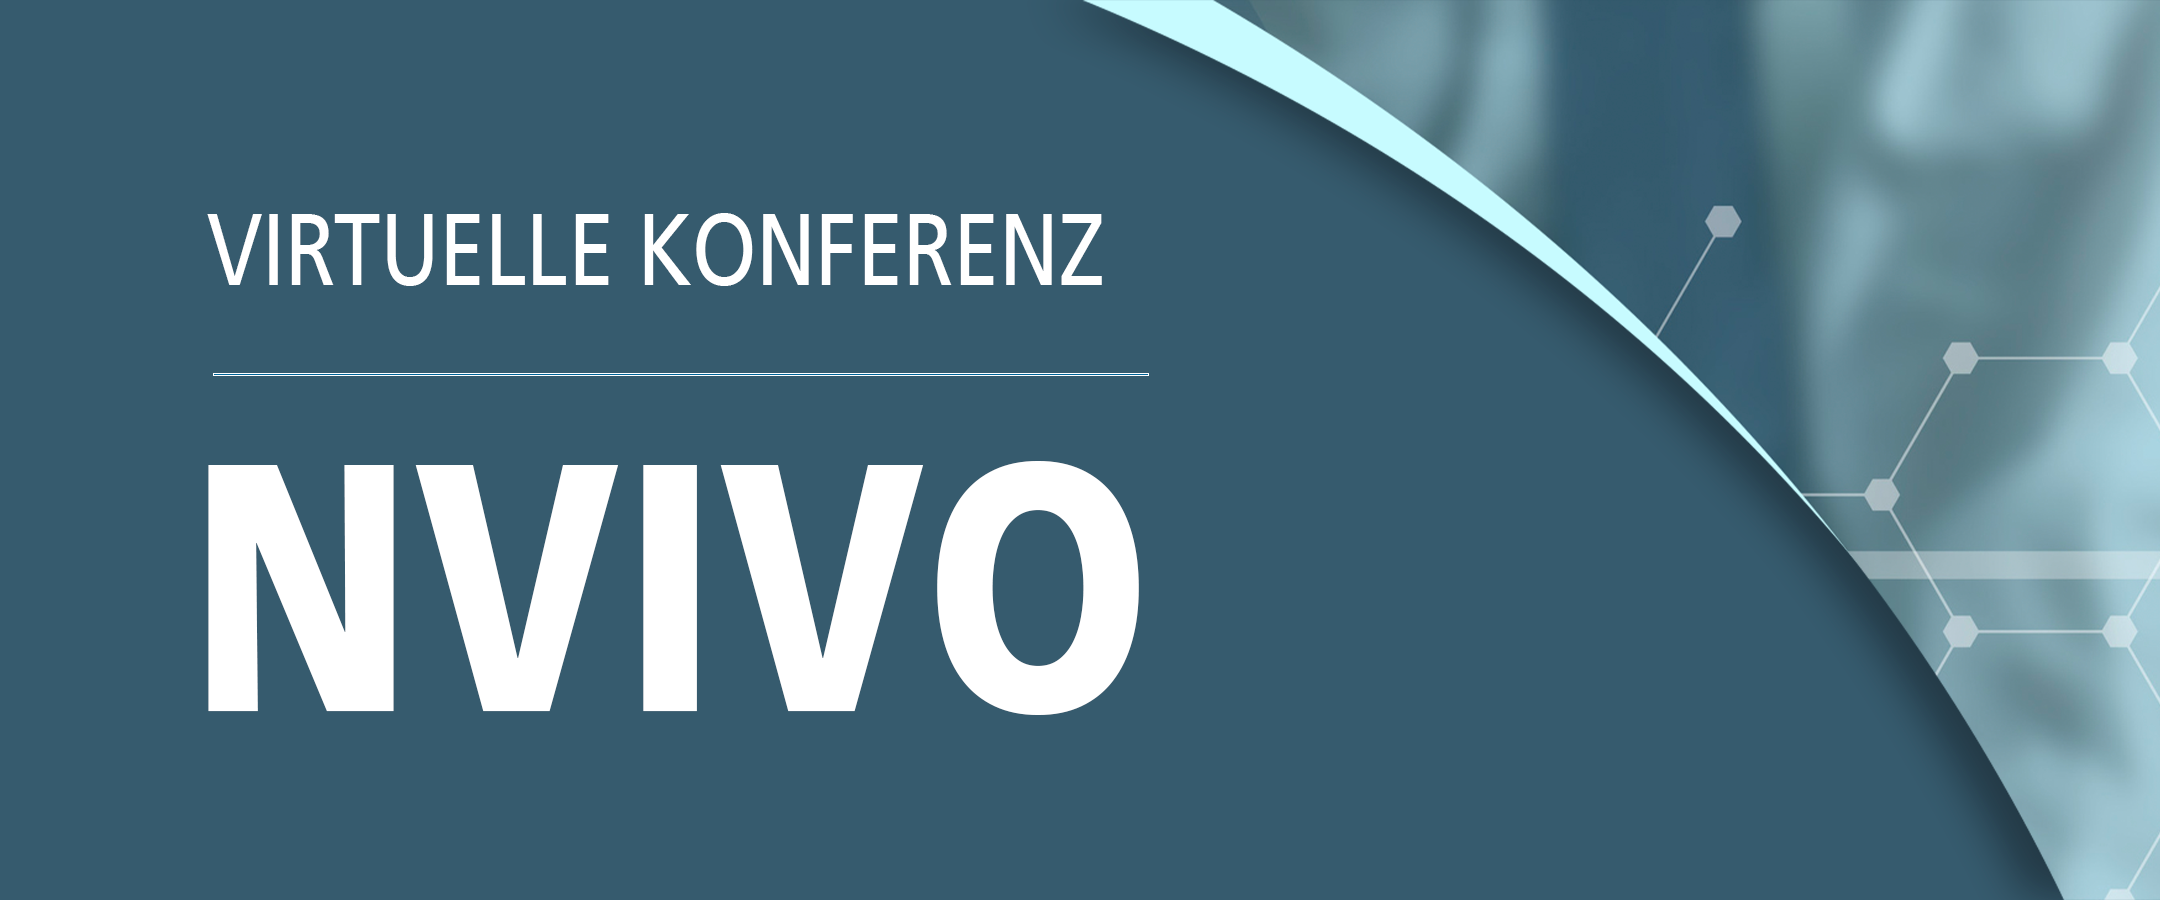 NVivo Virtual Konferenz – Qualitative Forschung in einer sich verändernden Welt